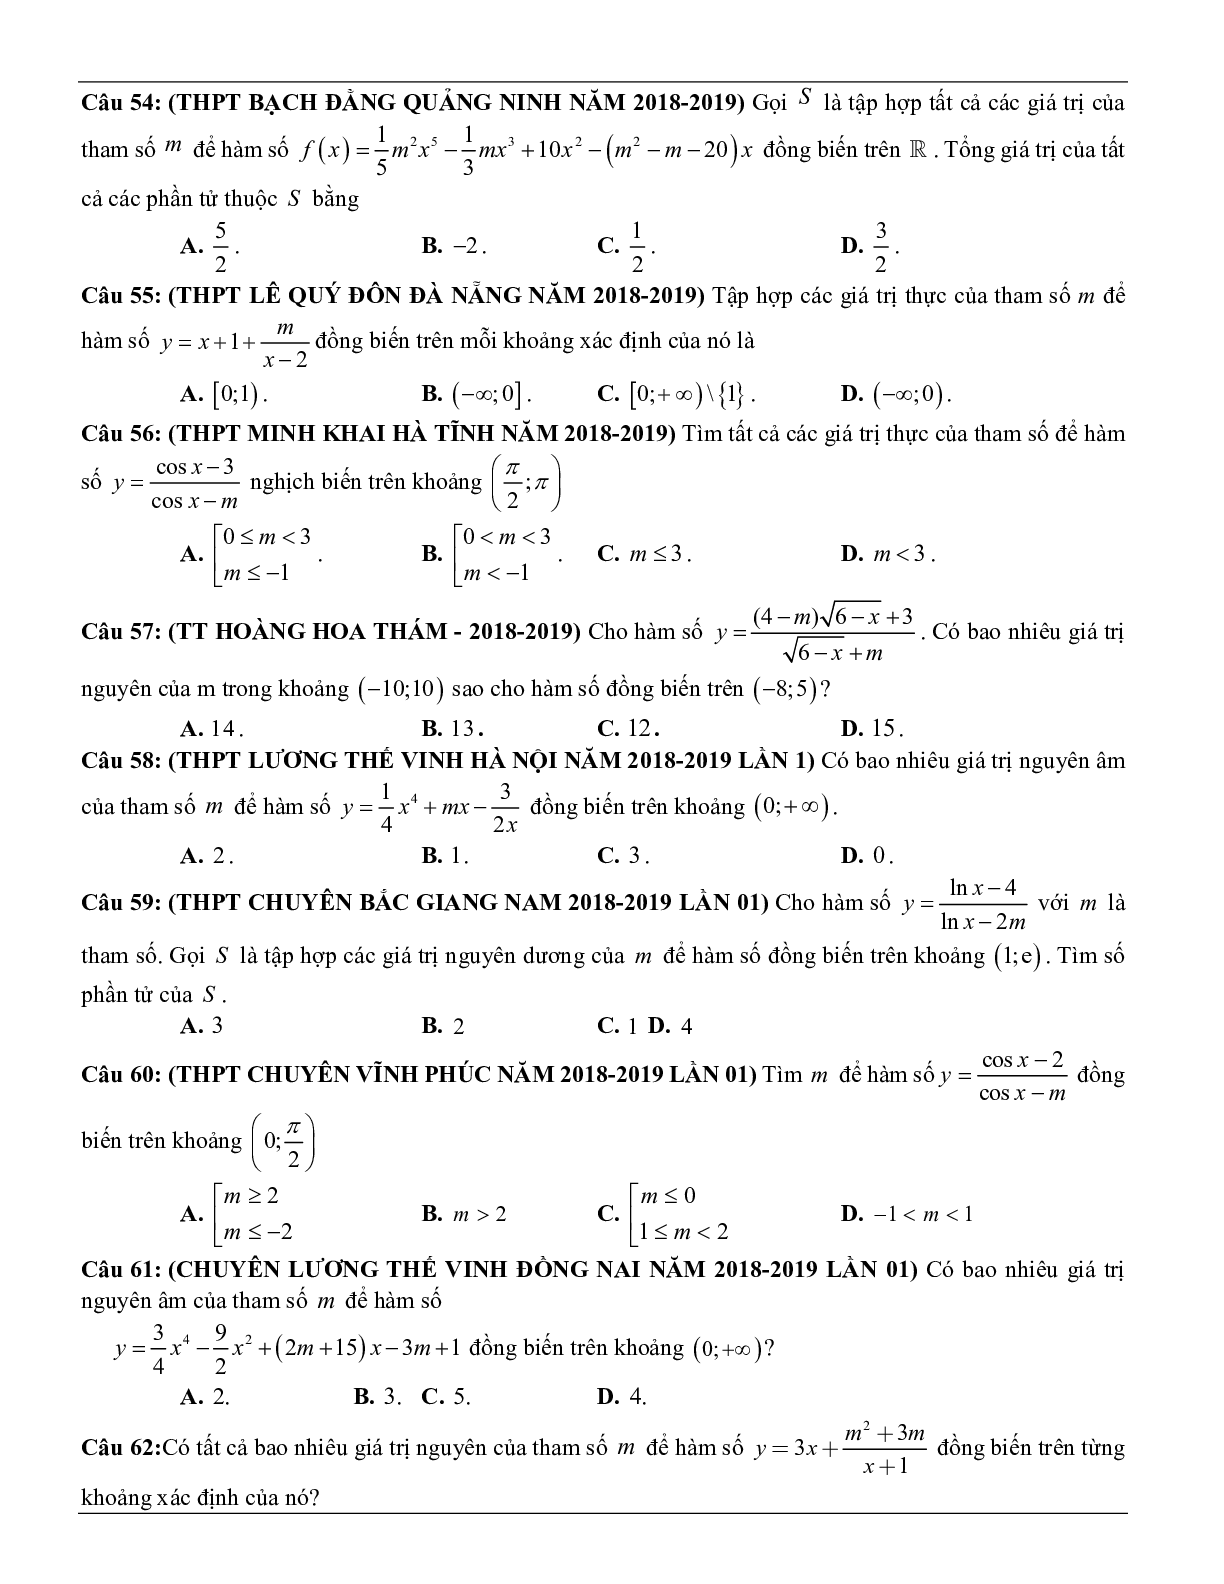 Các dạng toán về tính đơn điệu của hàm số thường gặp trong kỳ thi THPT Quốc gia (trang 8)